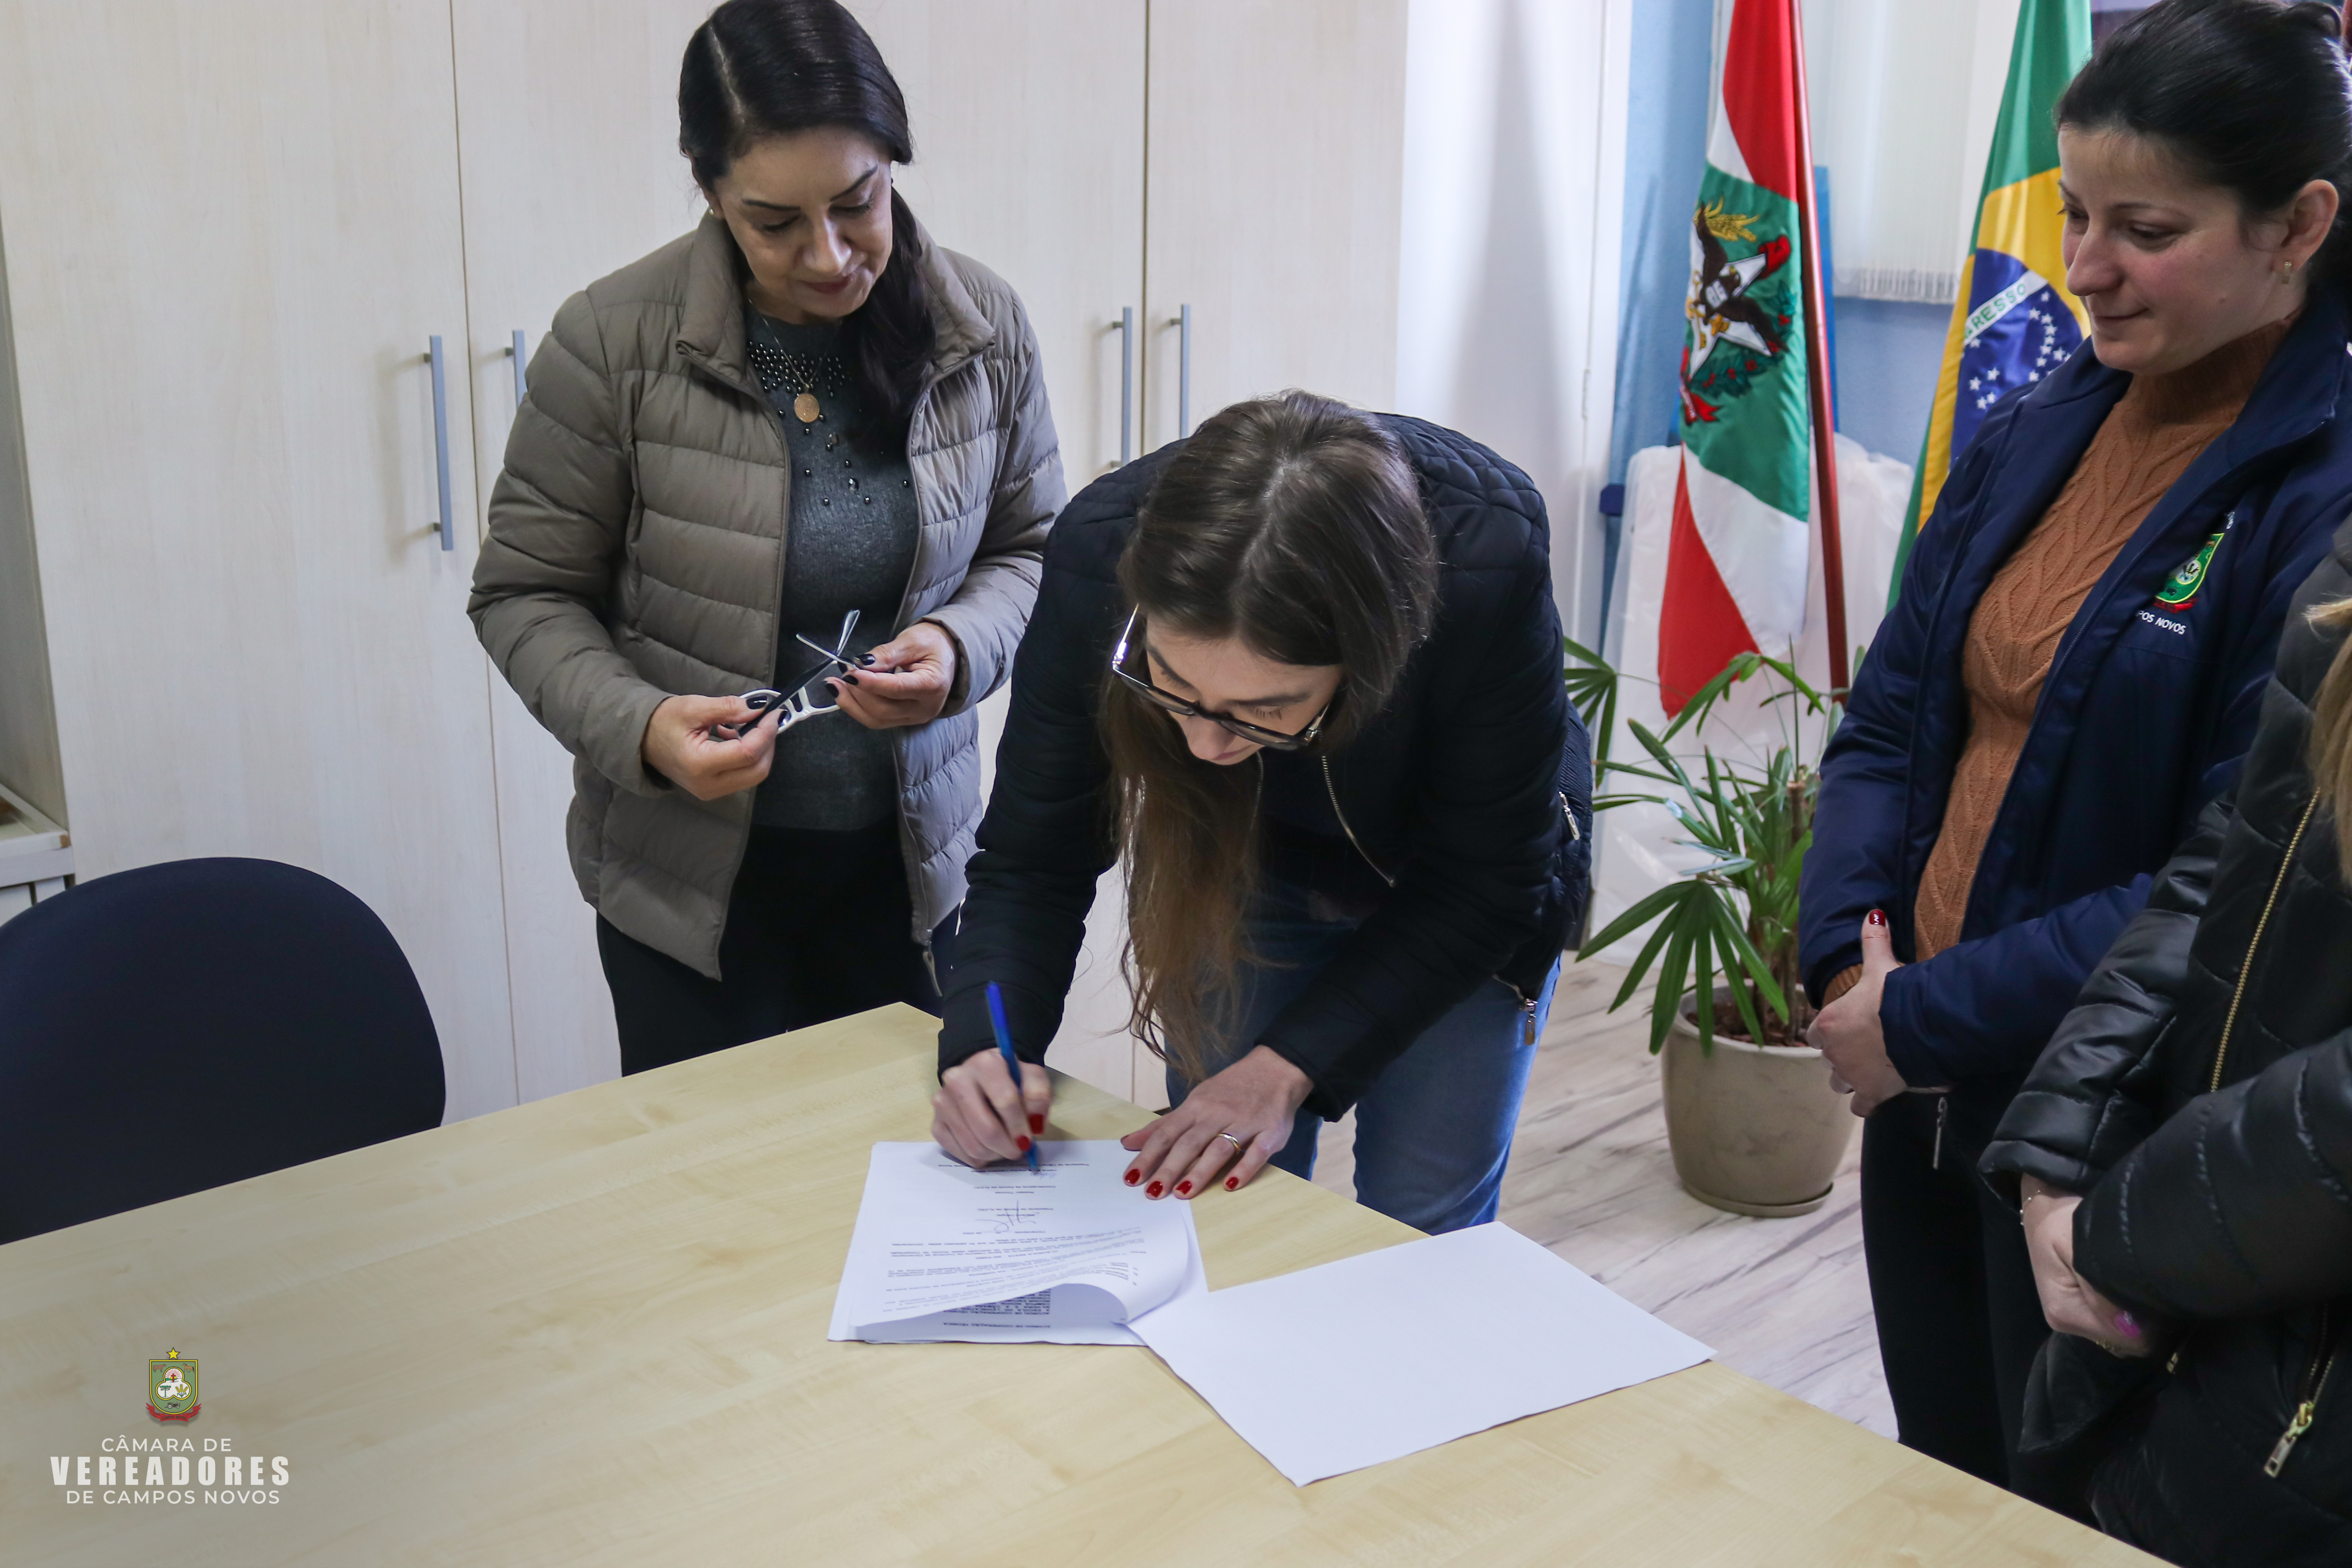 Câmara de Vereadores de Campos Novos e ALESC assinam Acordo de Cooperação Técnica